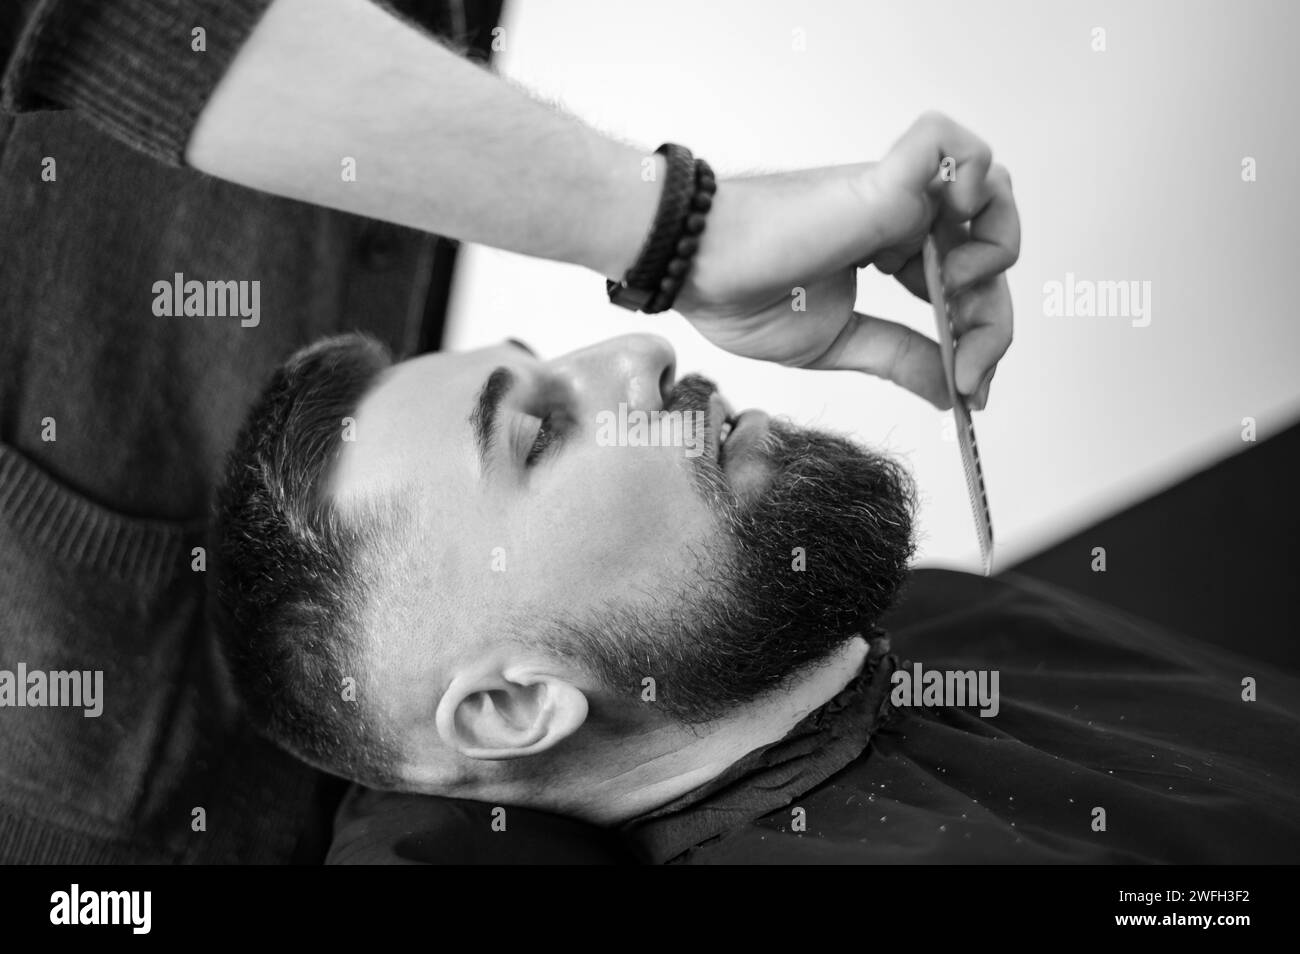 Pettini barbiere per tagliare e radere l'uomo caucasico Foto Stock